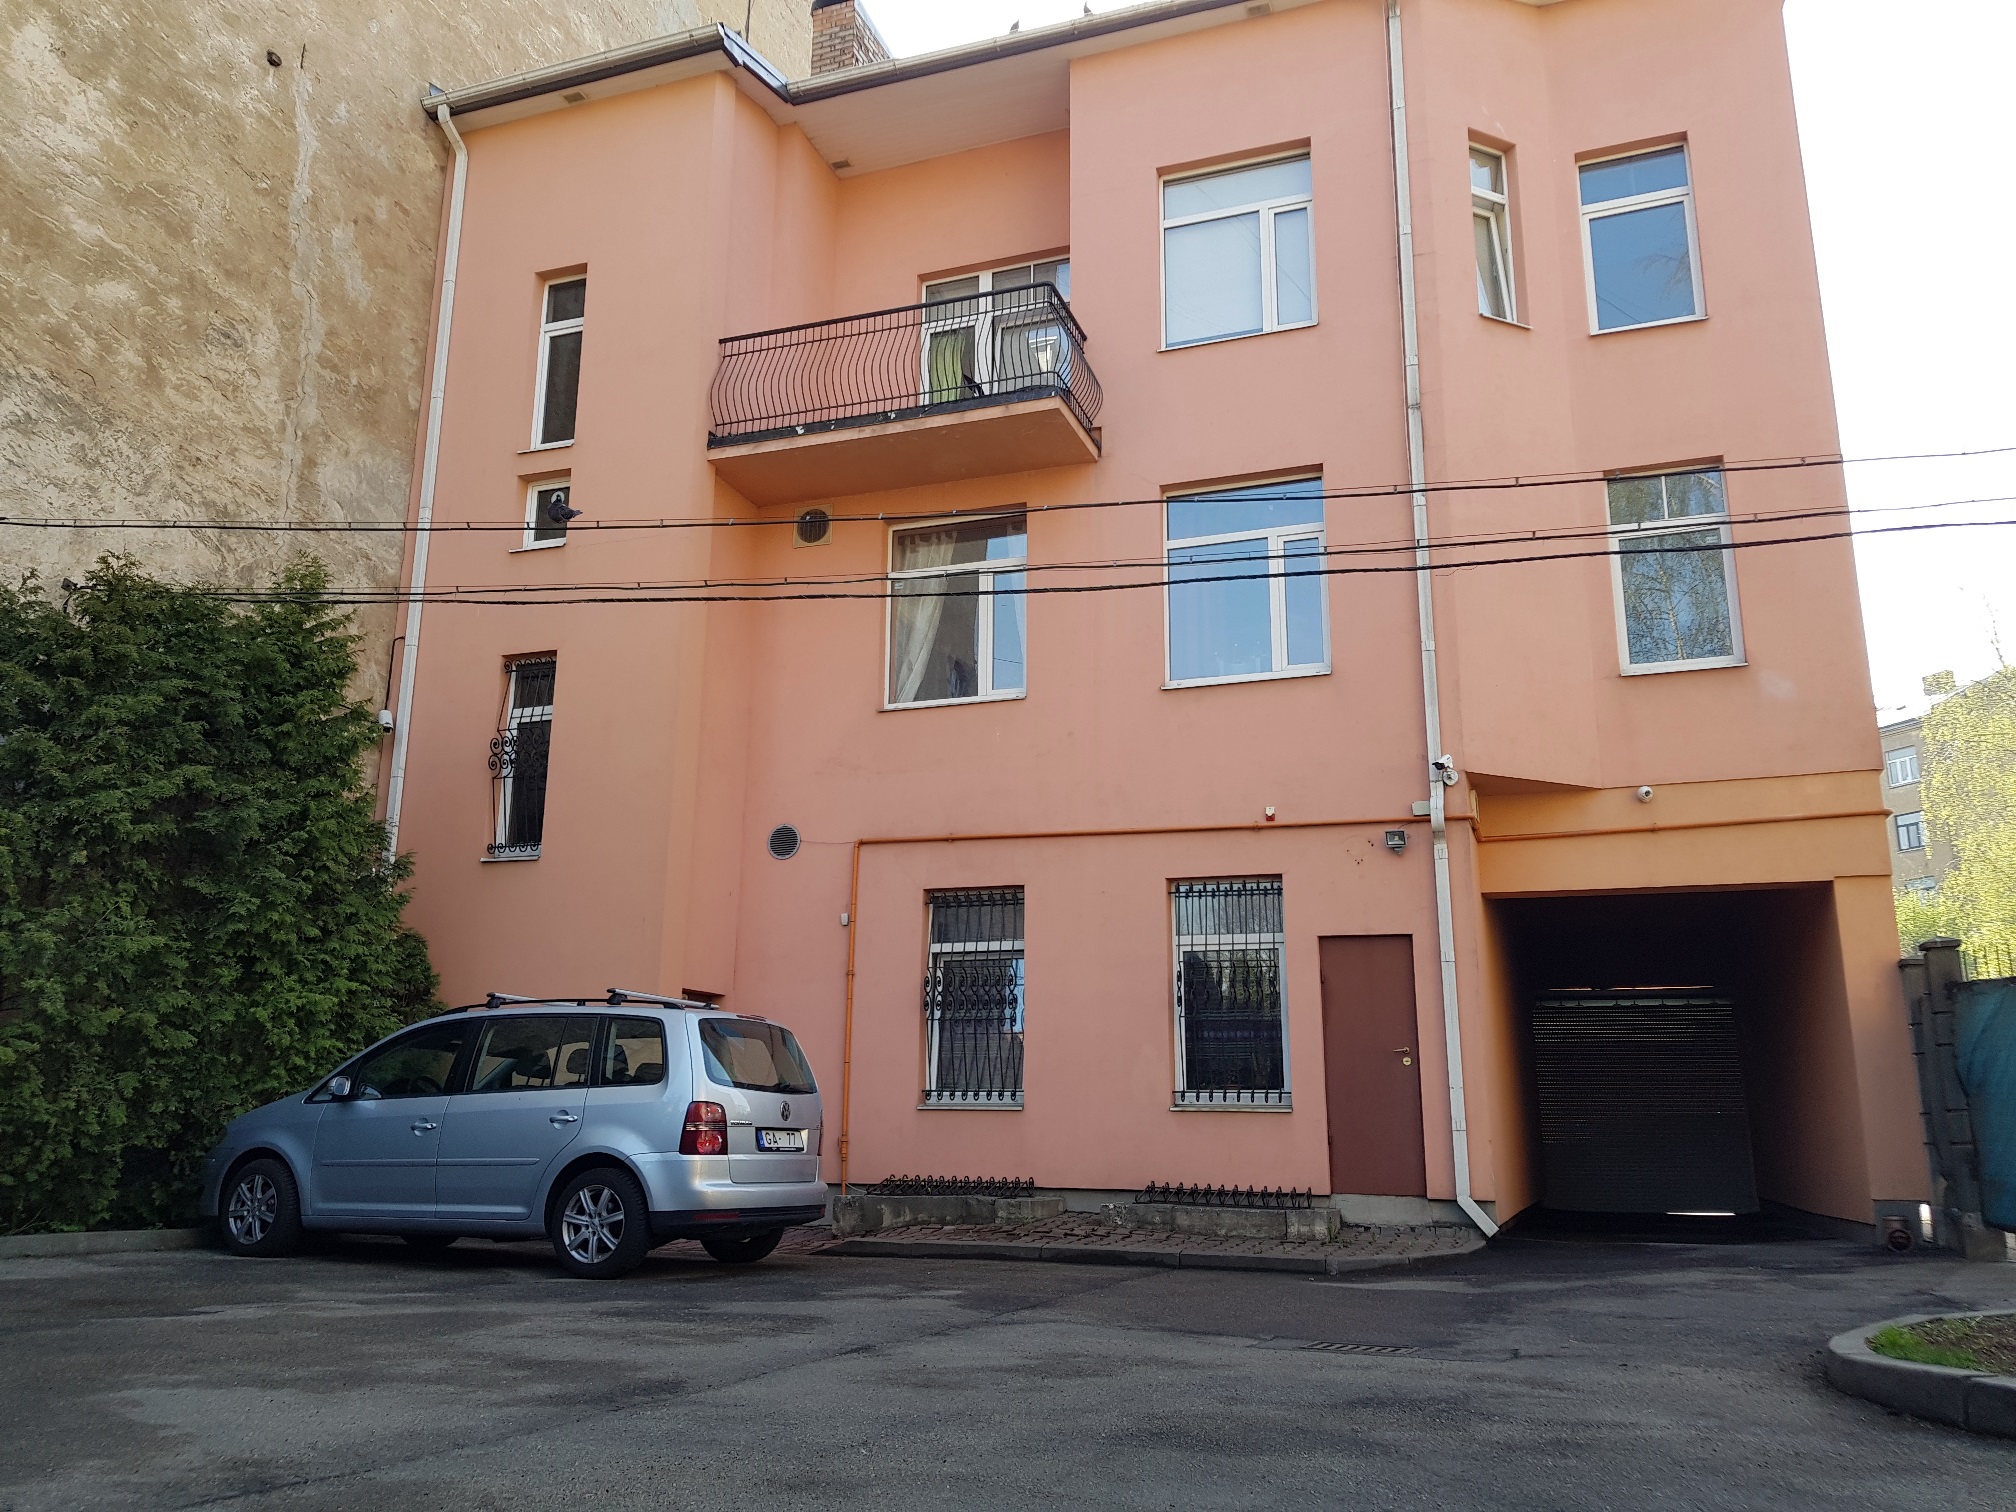 Продают дом, улица Dzirnavu - Изображение 1